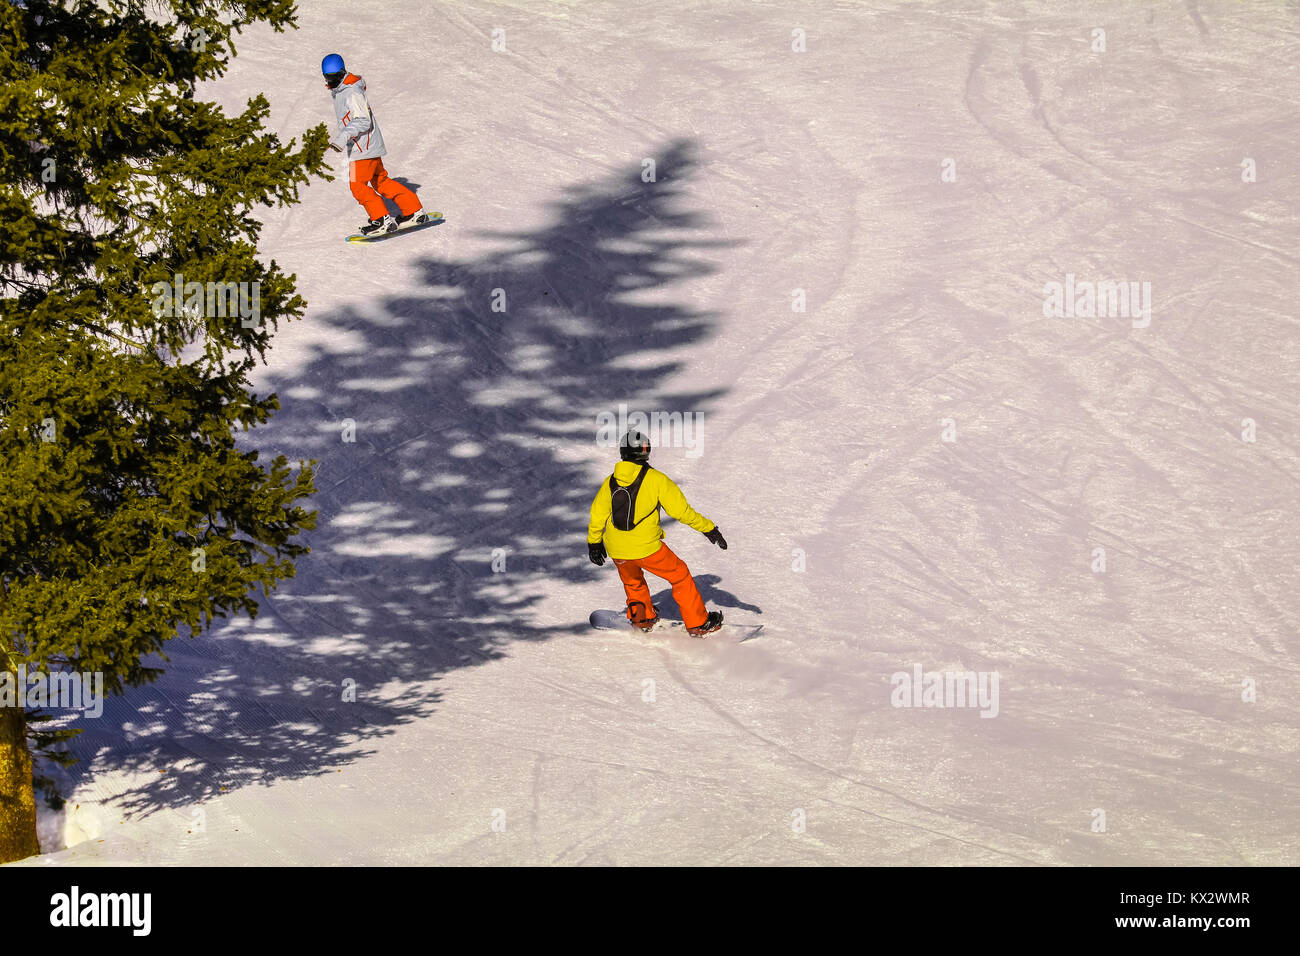 Giovani snowboarder scendendo lungo un pendio nevoso, suo istruttore davanti a lui; vista da sopra Foto Stock